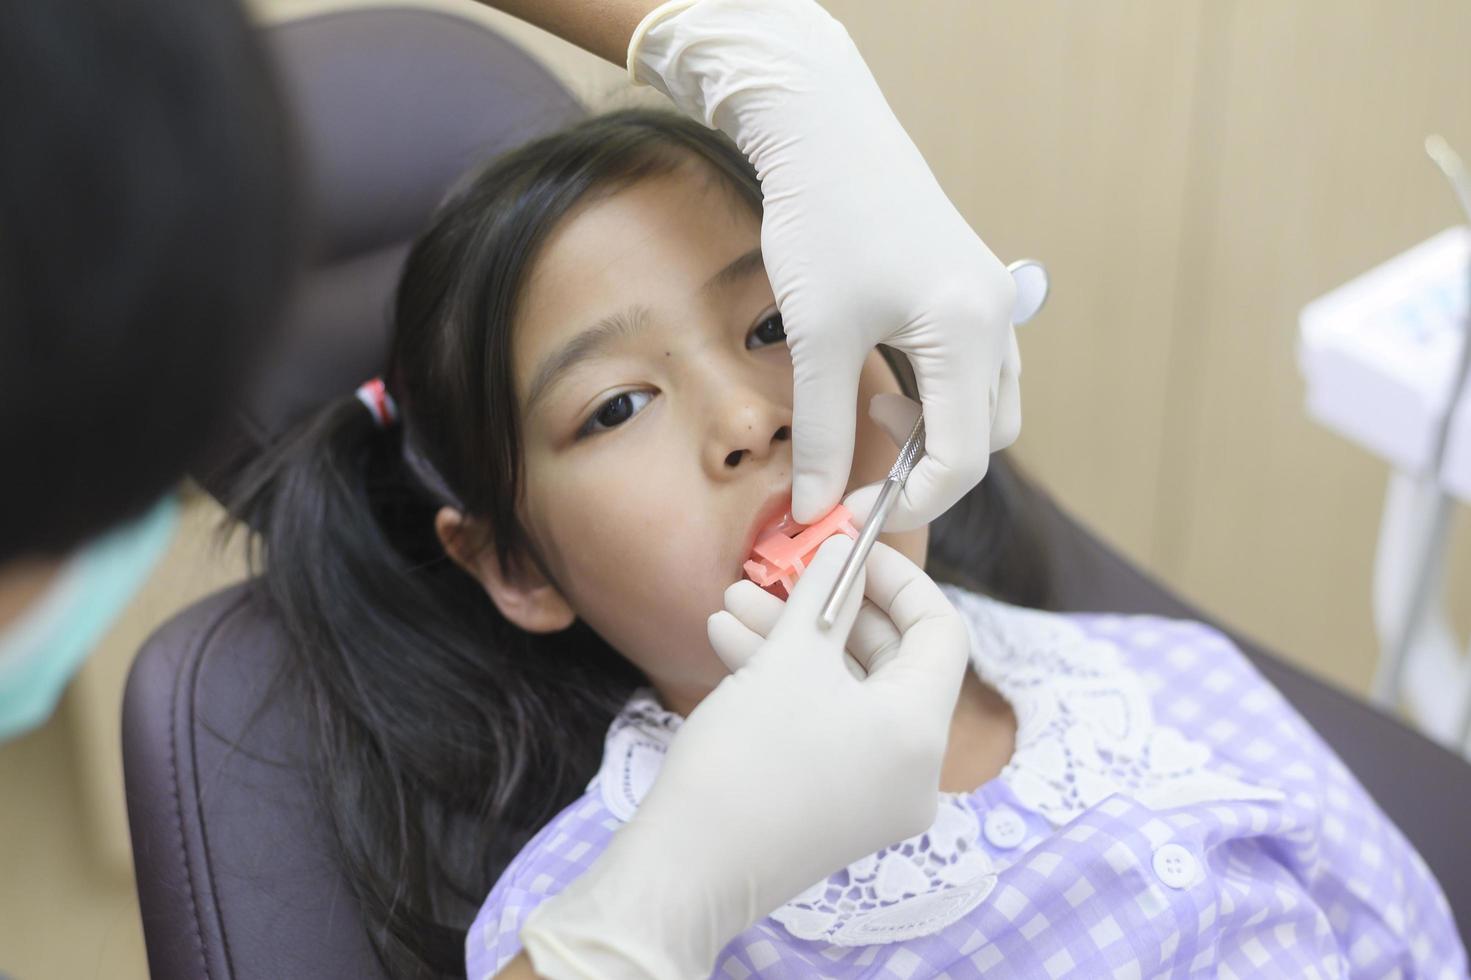 uma menina bonita tendo os dentes examinados pelo dentista na clínica odontológica, check-up de dentes e conceito de dentes saudáveis foto